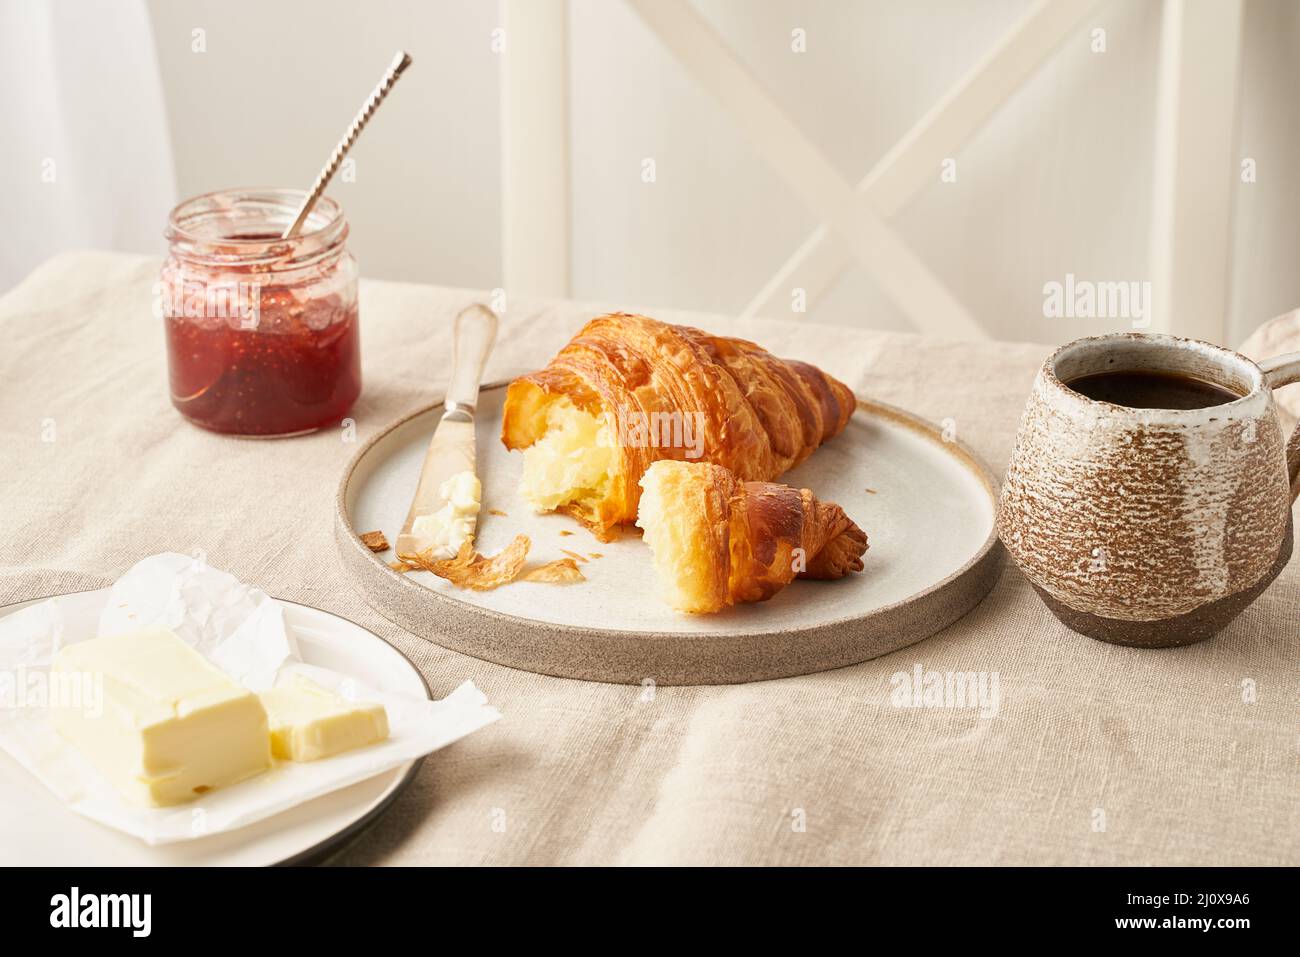 Deliziosi croissant sul piatto e bevanda calda in tazza, marmellata e burro. Foto Stock